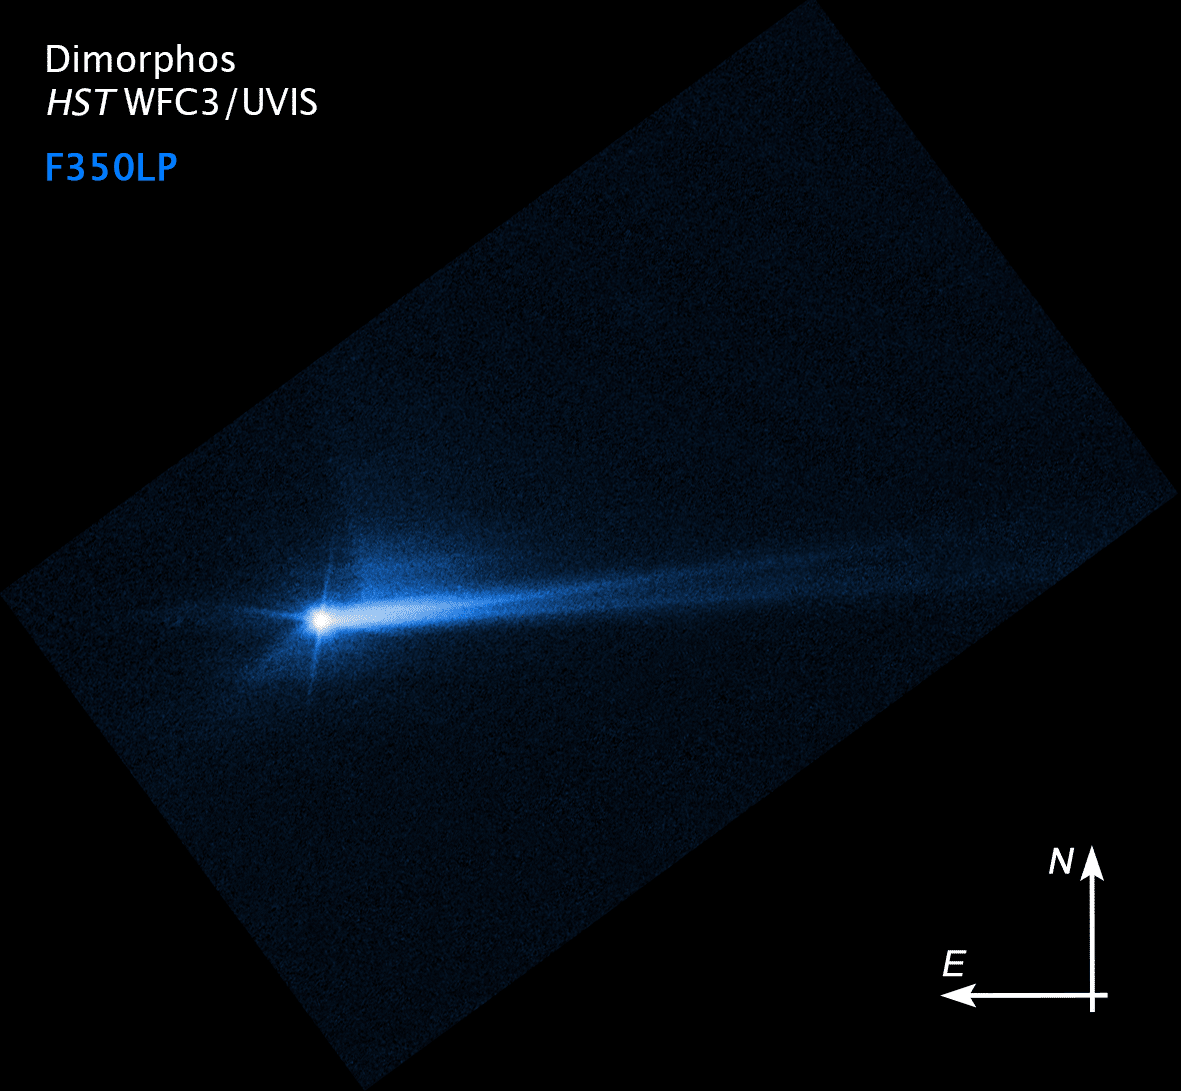 تُظهر هذه الصورة الملتقطة من تلسكوب هابل الفضائي التابع لناسا في 8 أكتوبر 2022، حطامًا انفجر من سطح ديمورفوس بعد 285 ساعة من الاصطدام المتعمد للمركبة الفضائية بالكويكب في 26 سبتمبر. وقد تغير شكل الذيل بمرور الوقت. ويواصل العلماء دراسة المواد المقذوفة من الكويكب نتيجة الاصطدام وكيفية تحركها عبر الفضاء، لفهم الكويكب بشكل أفضل.